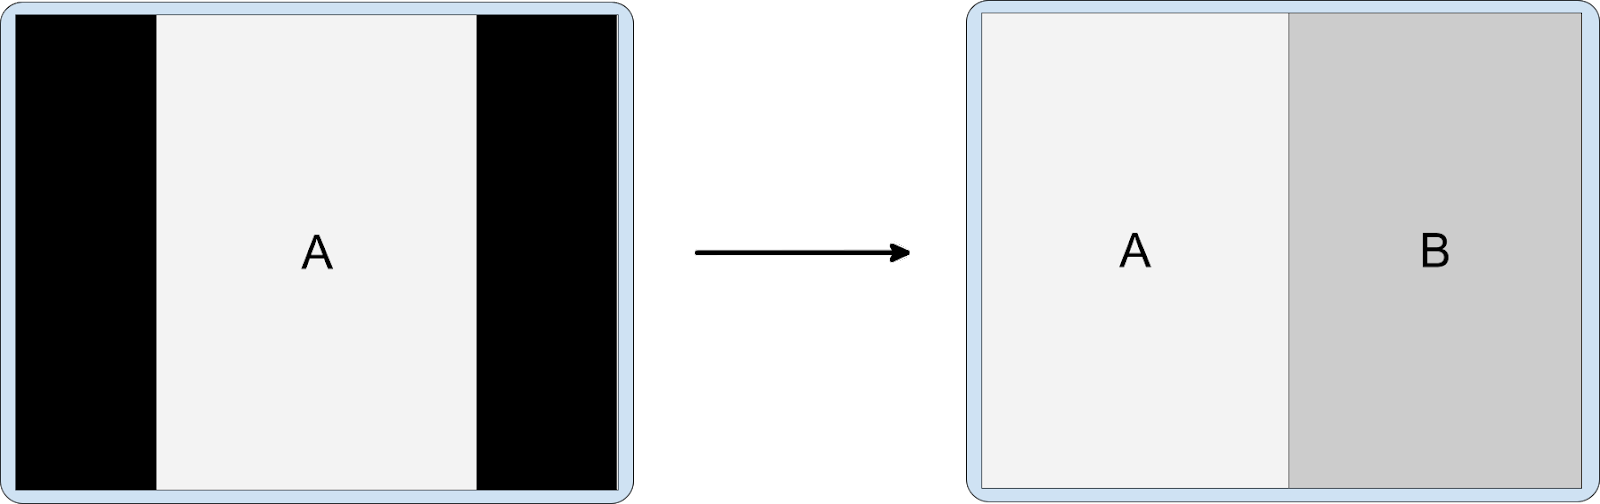 Intégration d'activités avec une application en mode portrait sur un affichage en mode paysage L'activité A au format letterbox, en mode portrait uniquement, lance l'activité intégrée B.